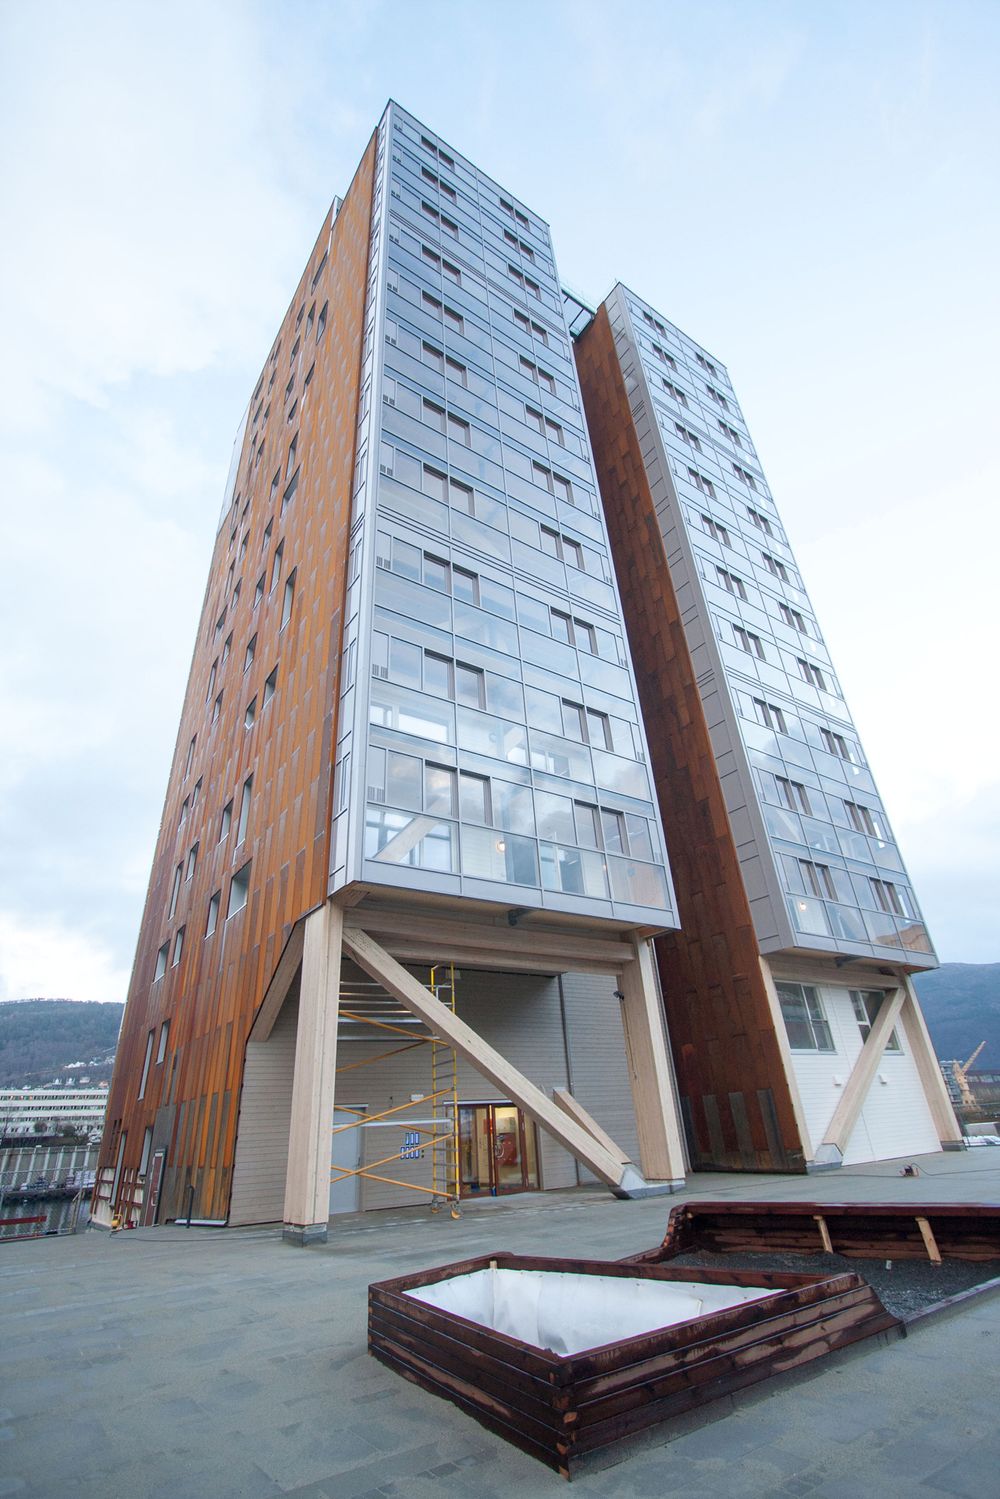 Onsdag klokken 14 åpner verdens høyeste trehus i Bergen. 